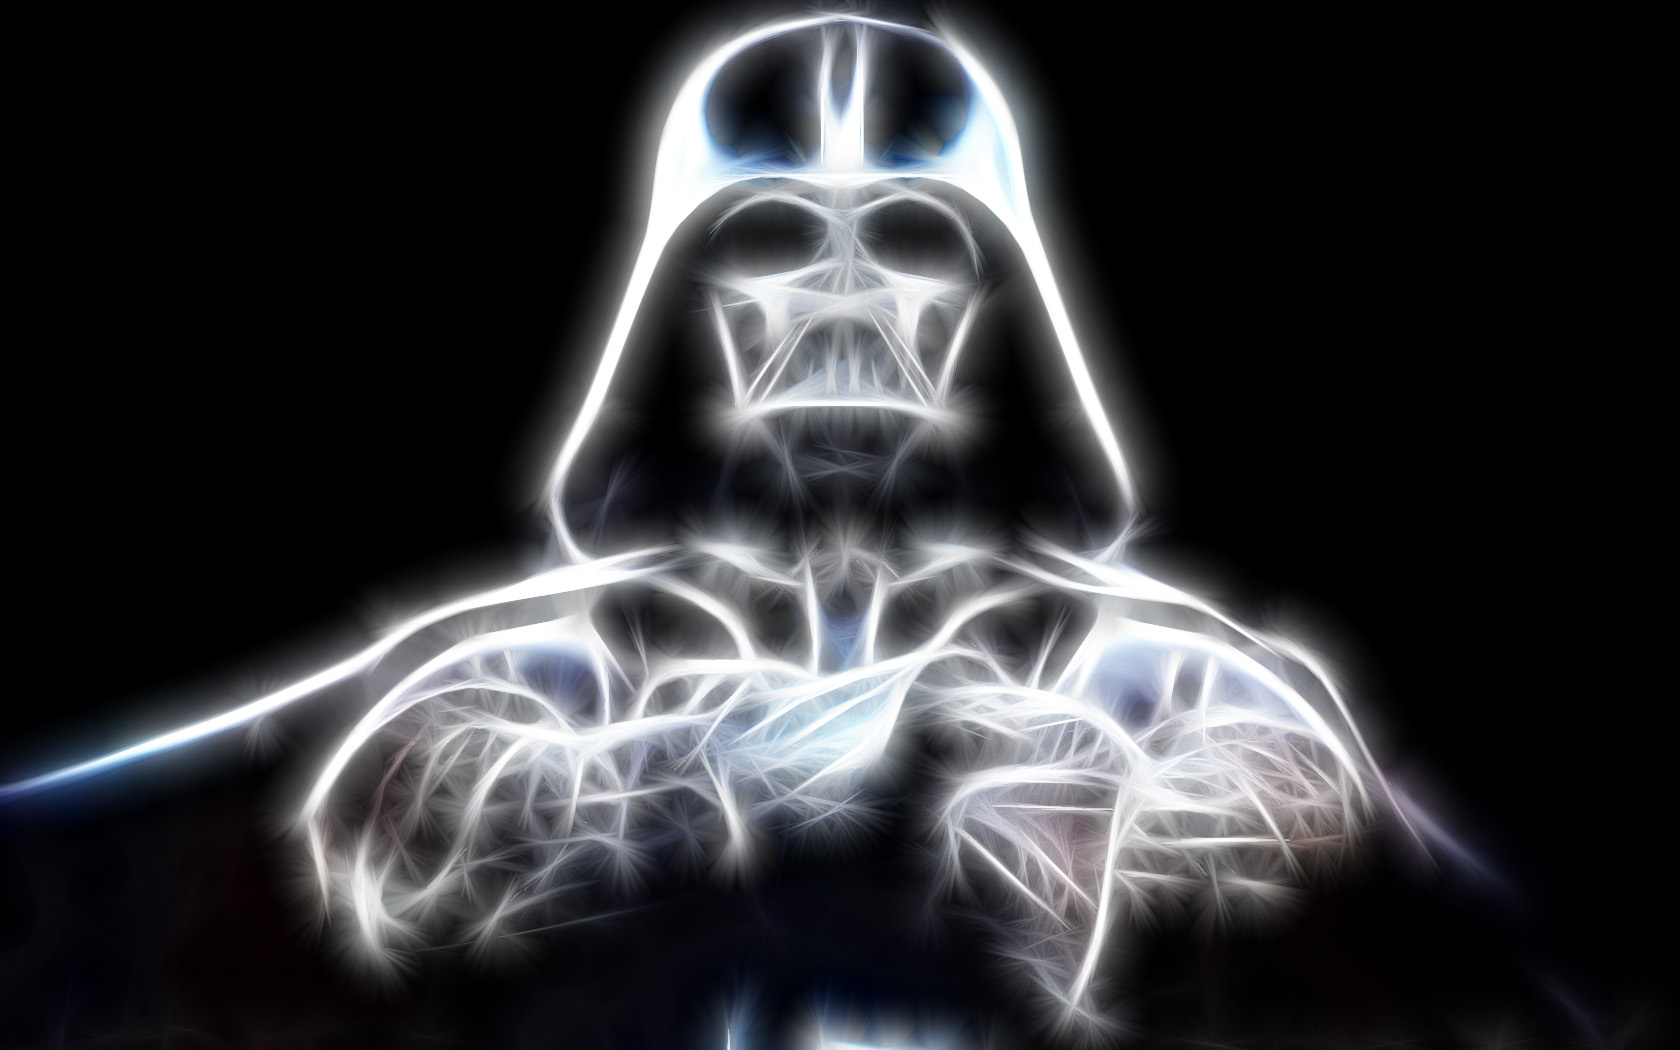 Darth Vader's helmet in high definition desktop wallpaper.